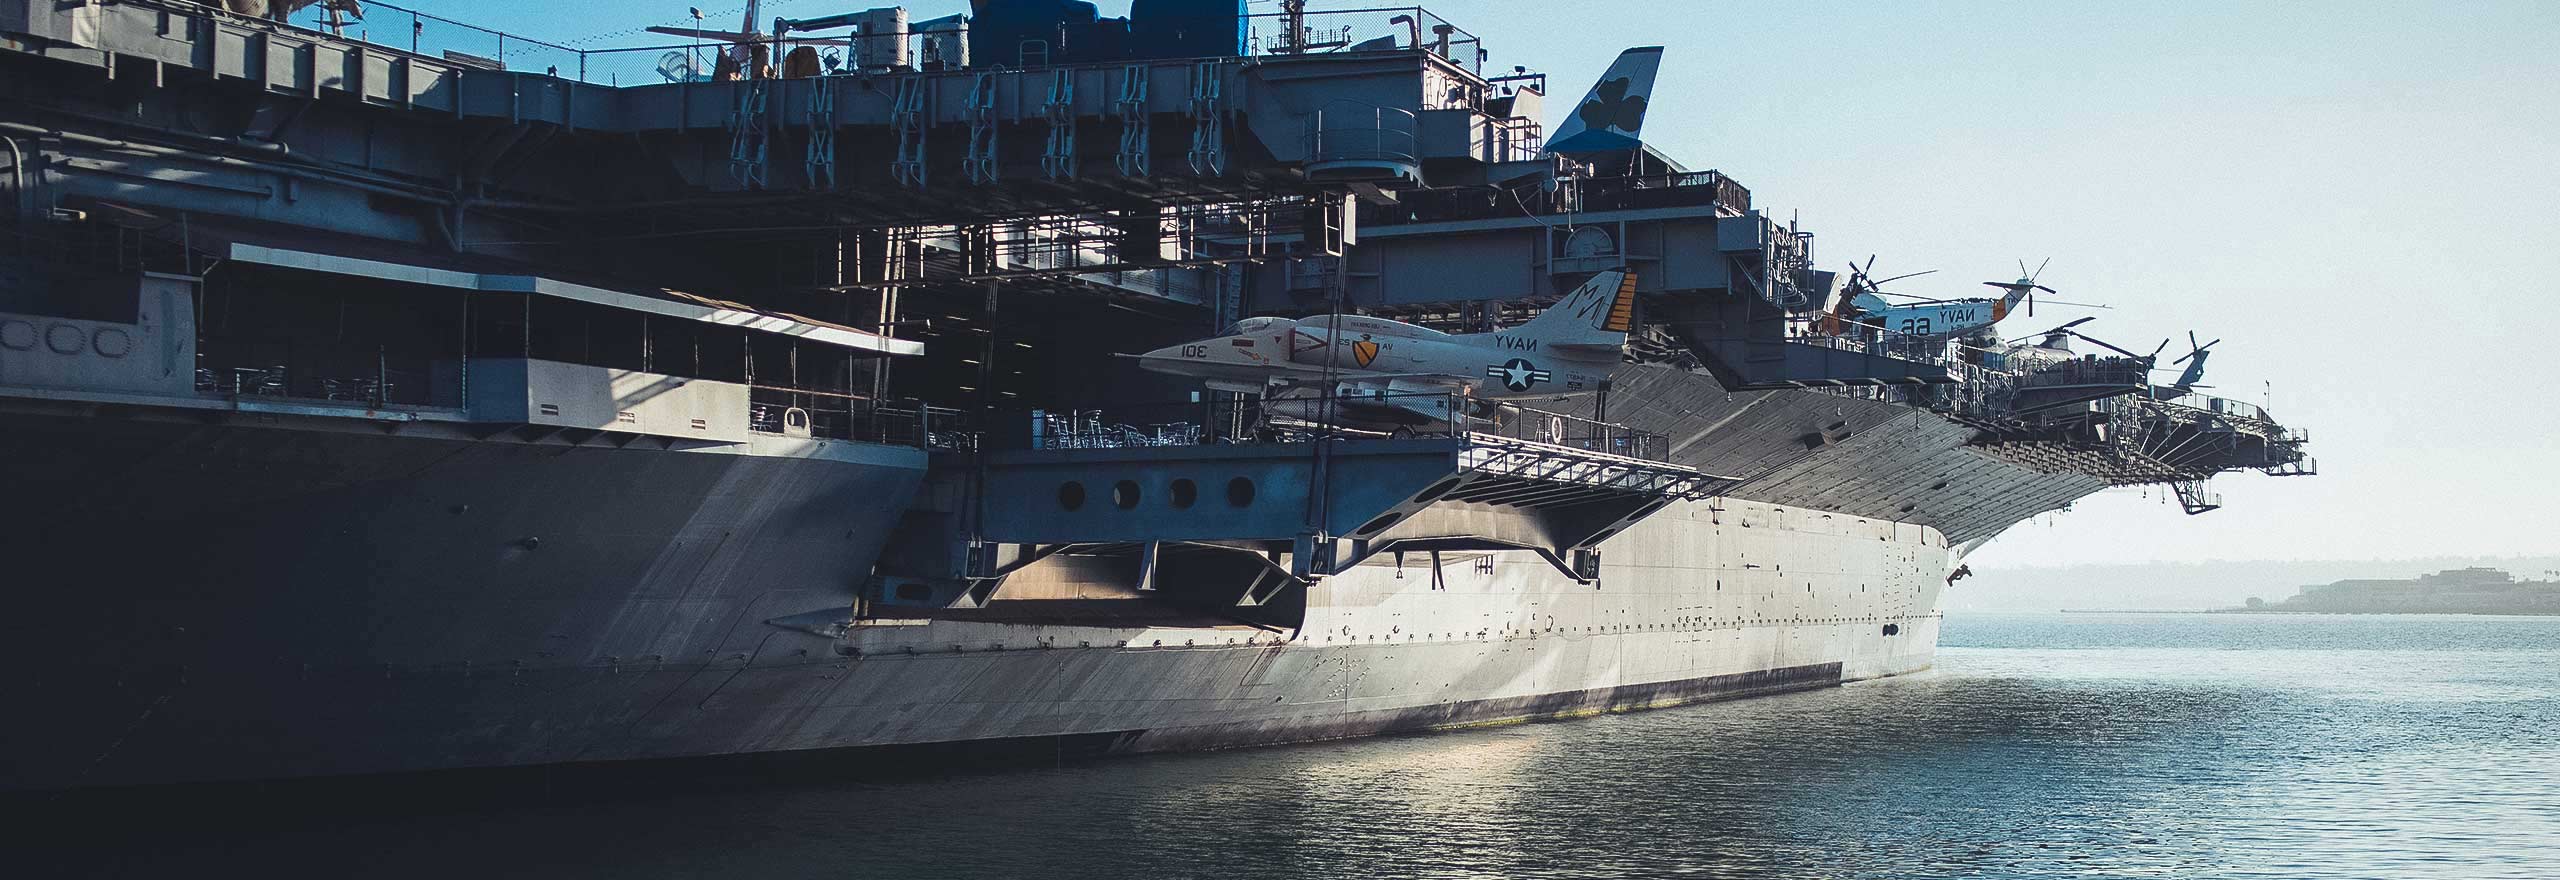 Embarcação naval com a tecnologia﻿°de defesa naval da Hexagon